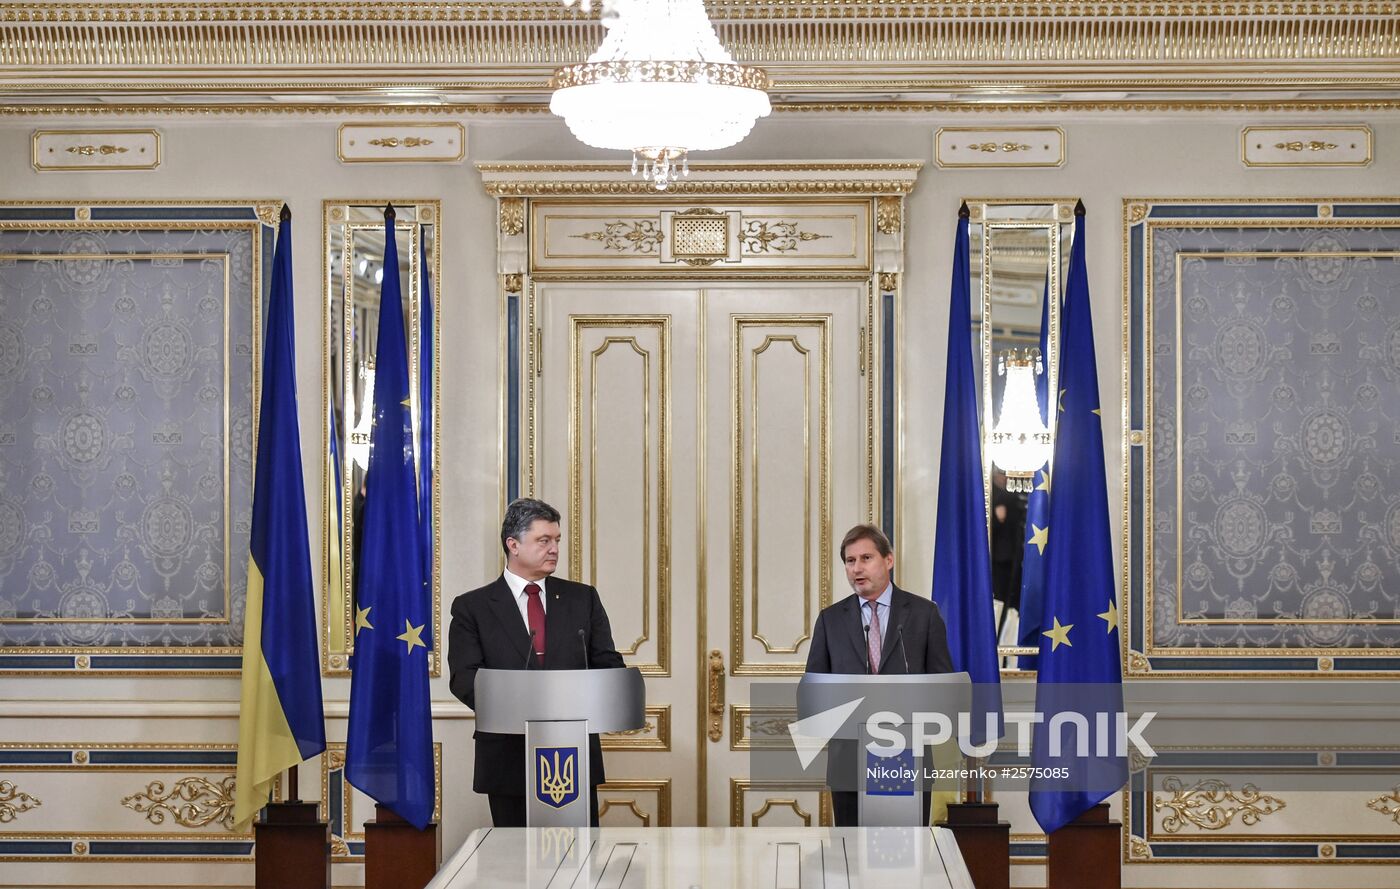 Press conference by Petro Poroshenko and Johannes Hahn in Kiev